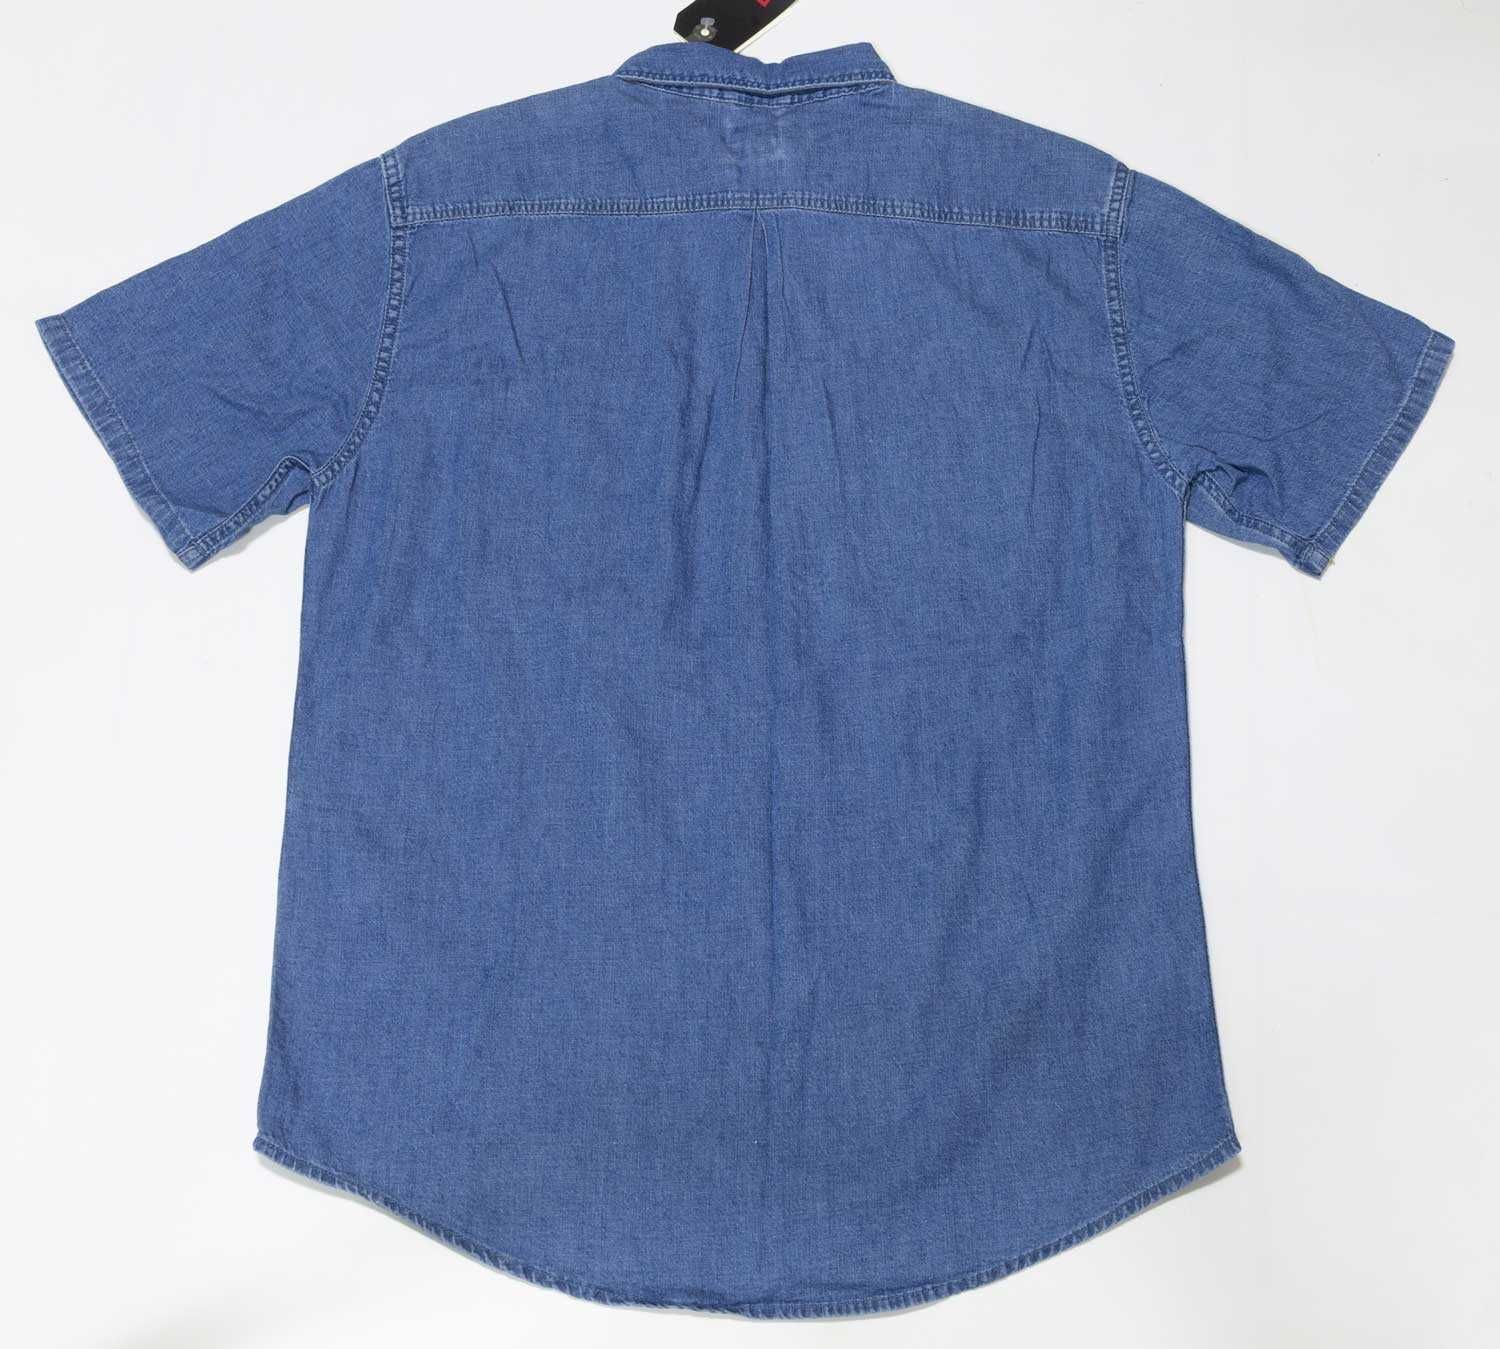 Джинсовая рубашка Levis, шведка футболка Левис джинсы из США